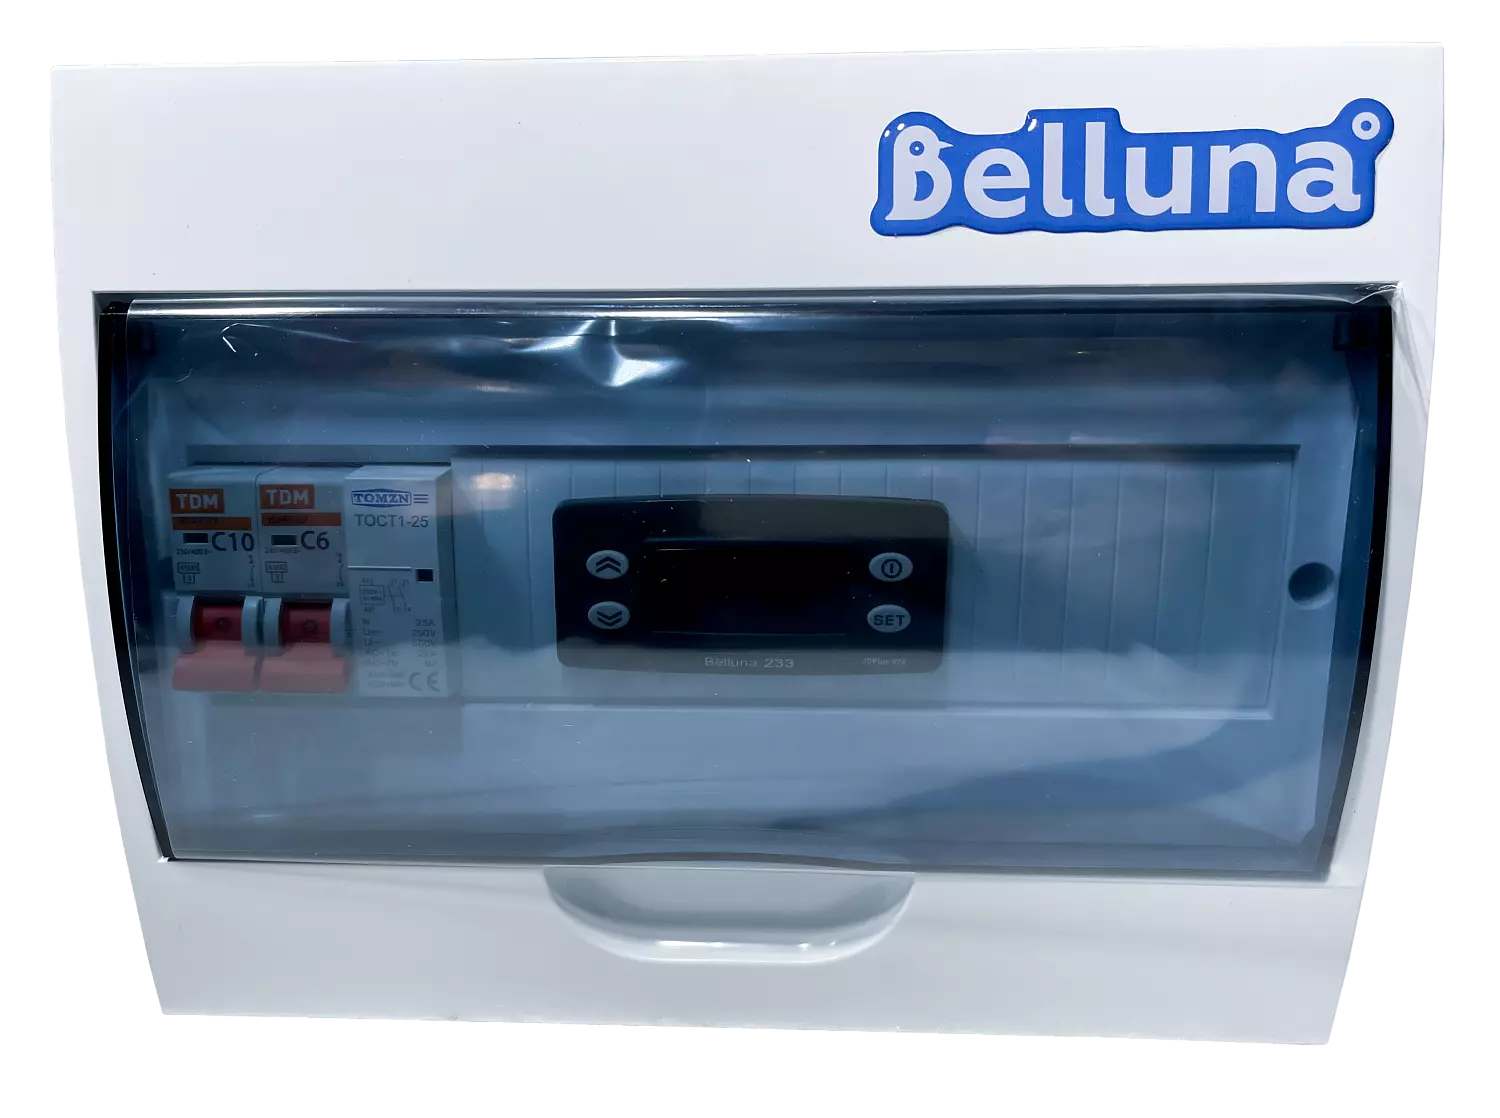 сплит-система Belluna U205 Казань